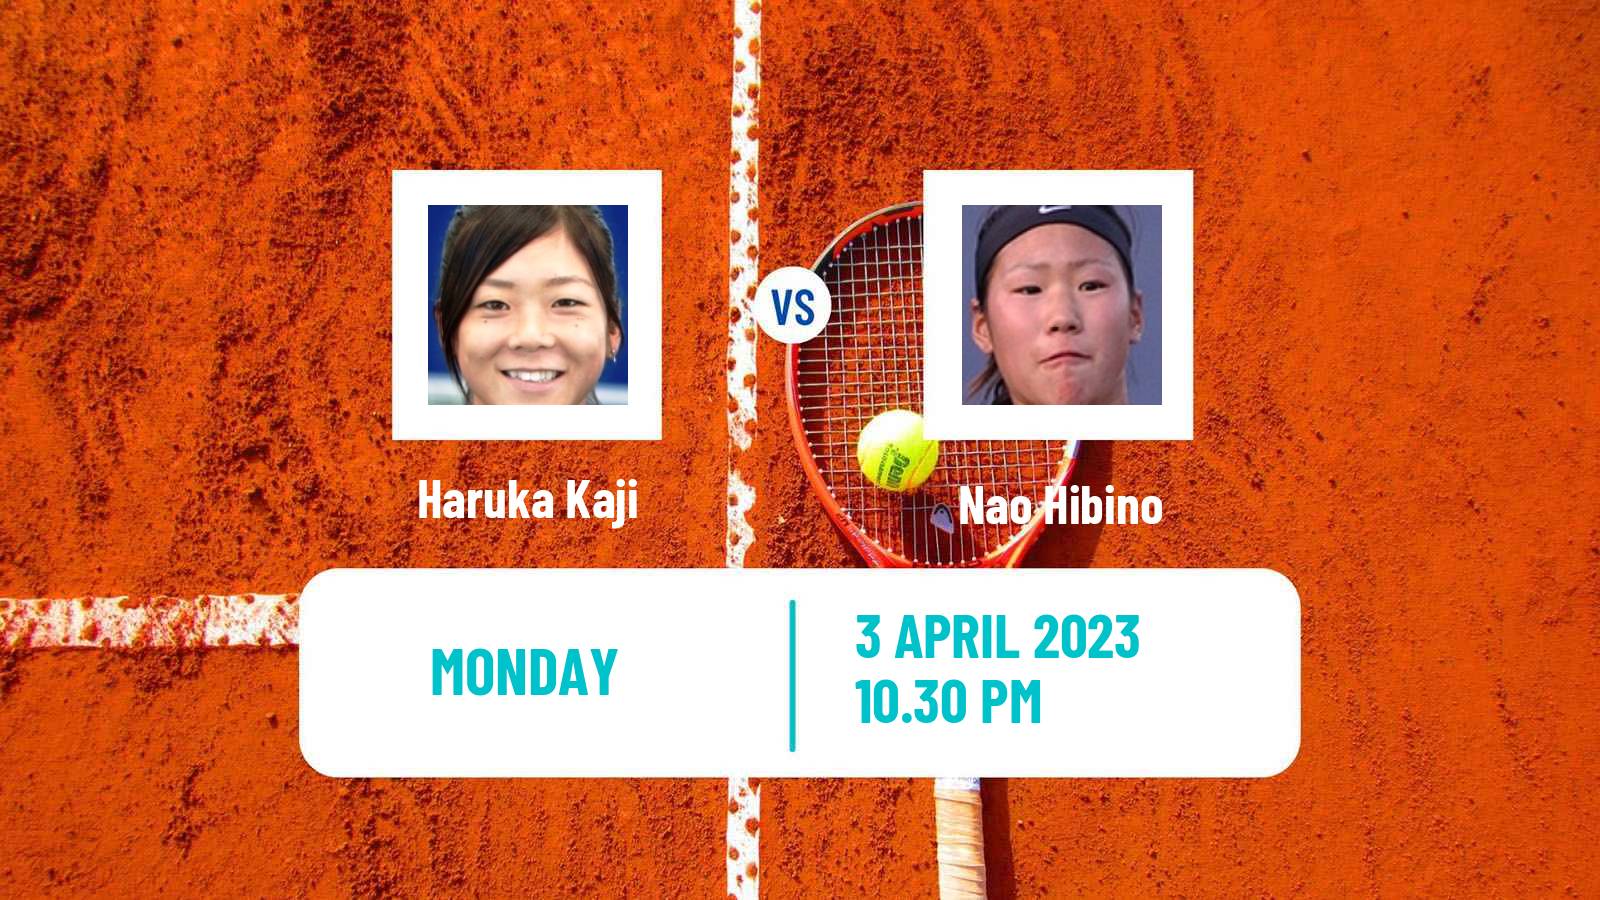 Tennis ITF Tournaments Haruka Kaji - Nao Hibino